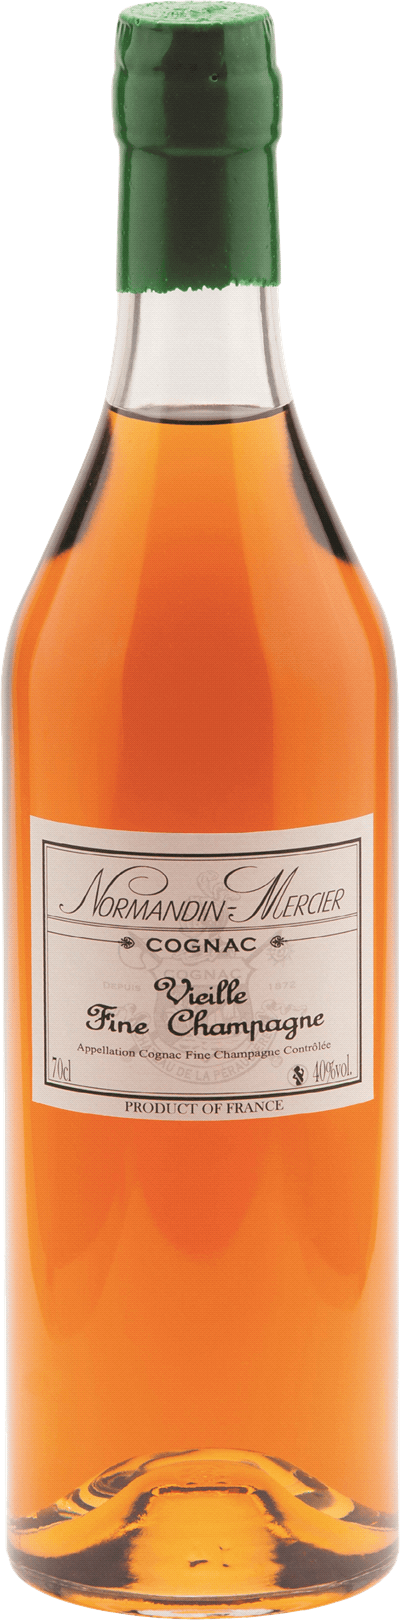 Normandin Mercier Vielle Fine Champagne